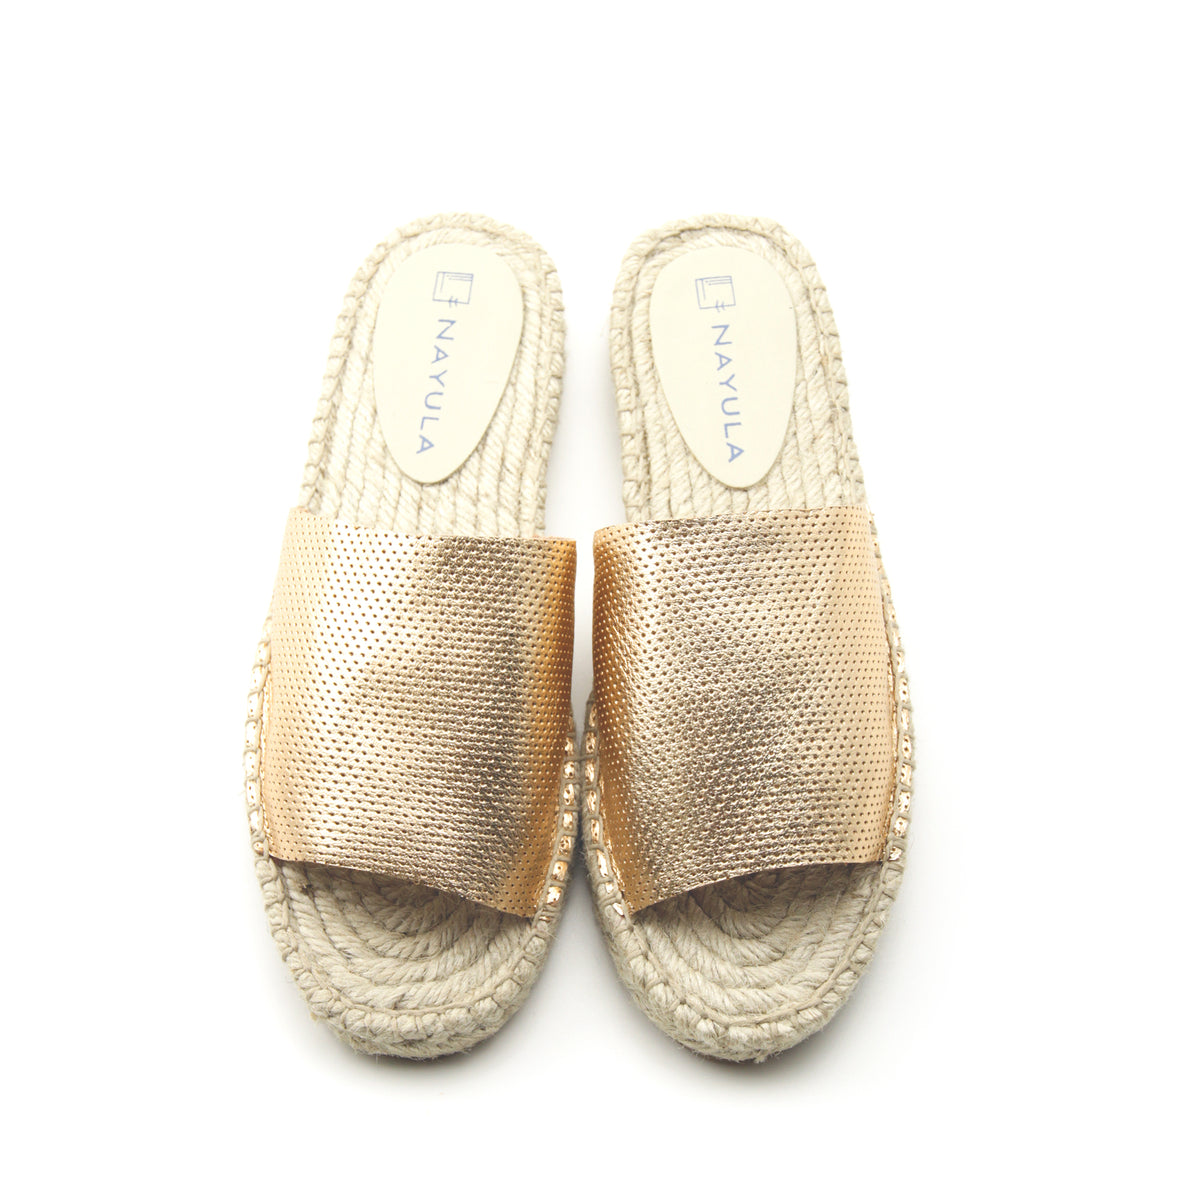 Slide sandals espadrille #NA803 'Ocean' [CHAMPAGNE GOLD]